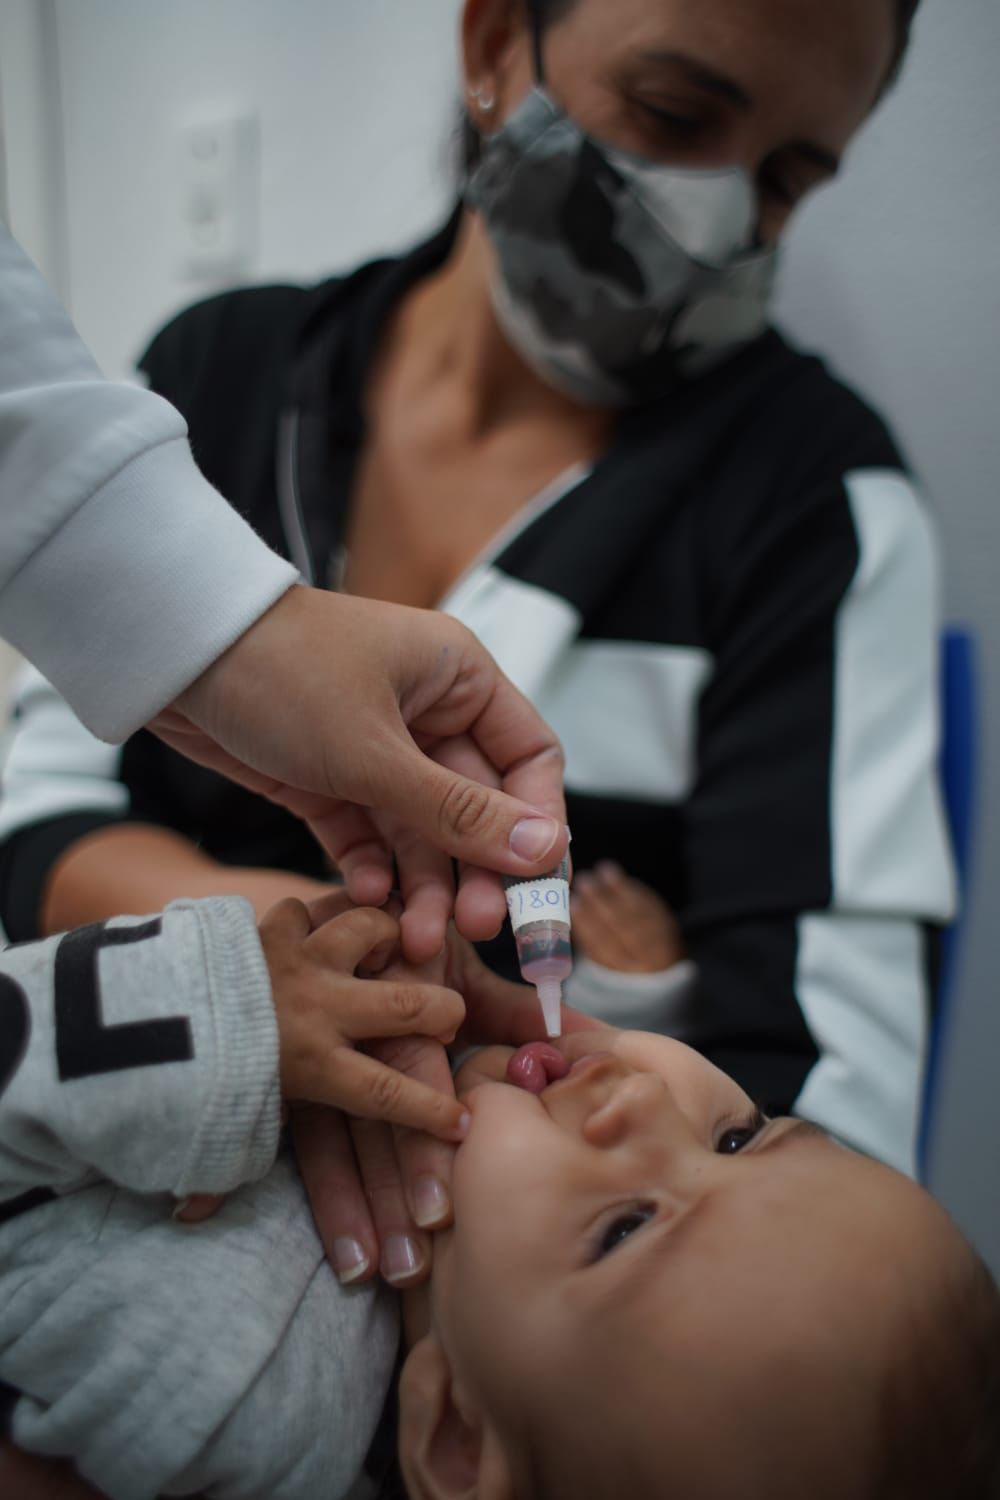 Bertioga prorroga vacinação contra poliomielite até 31 de outubro